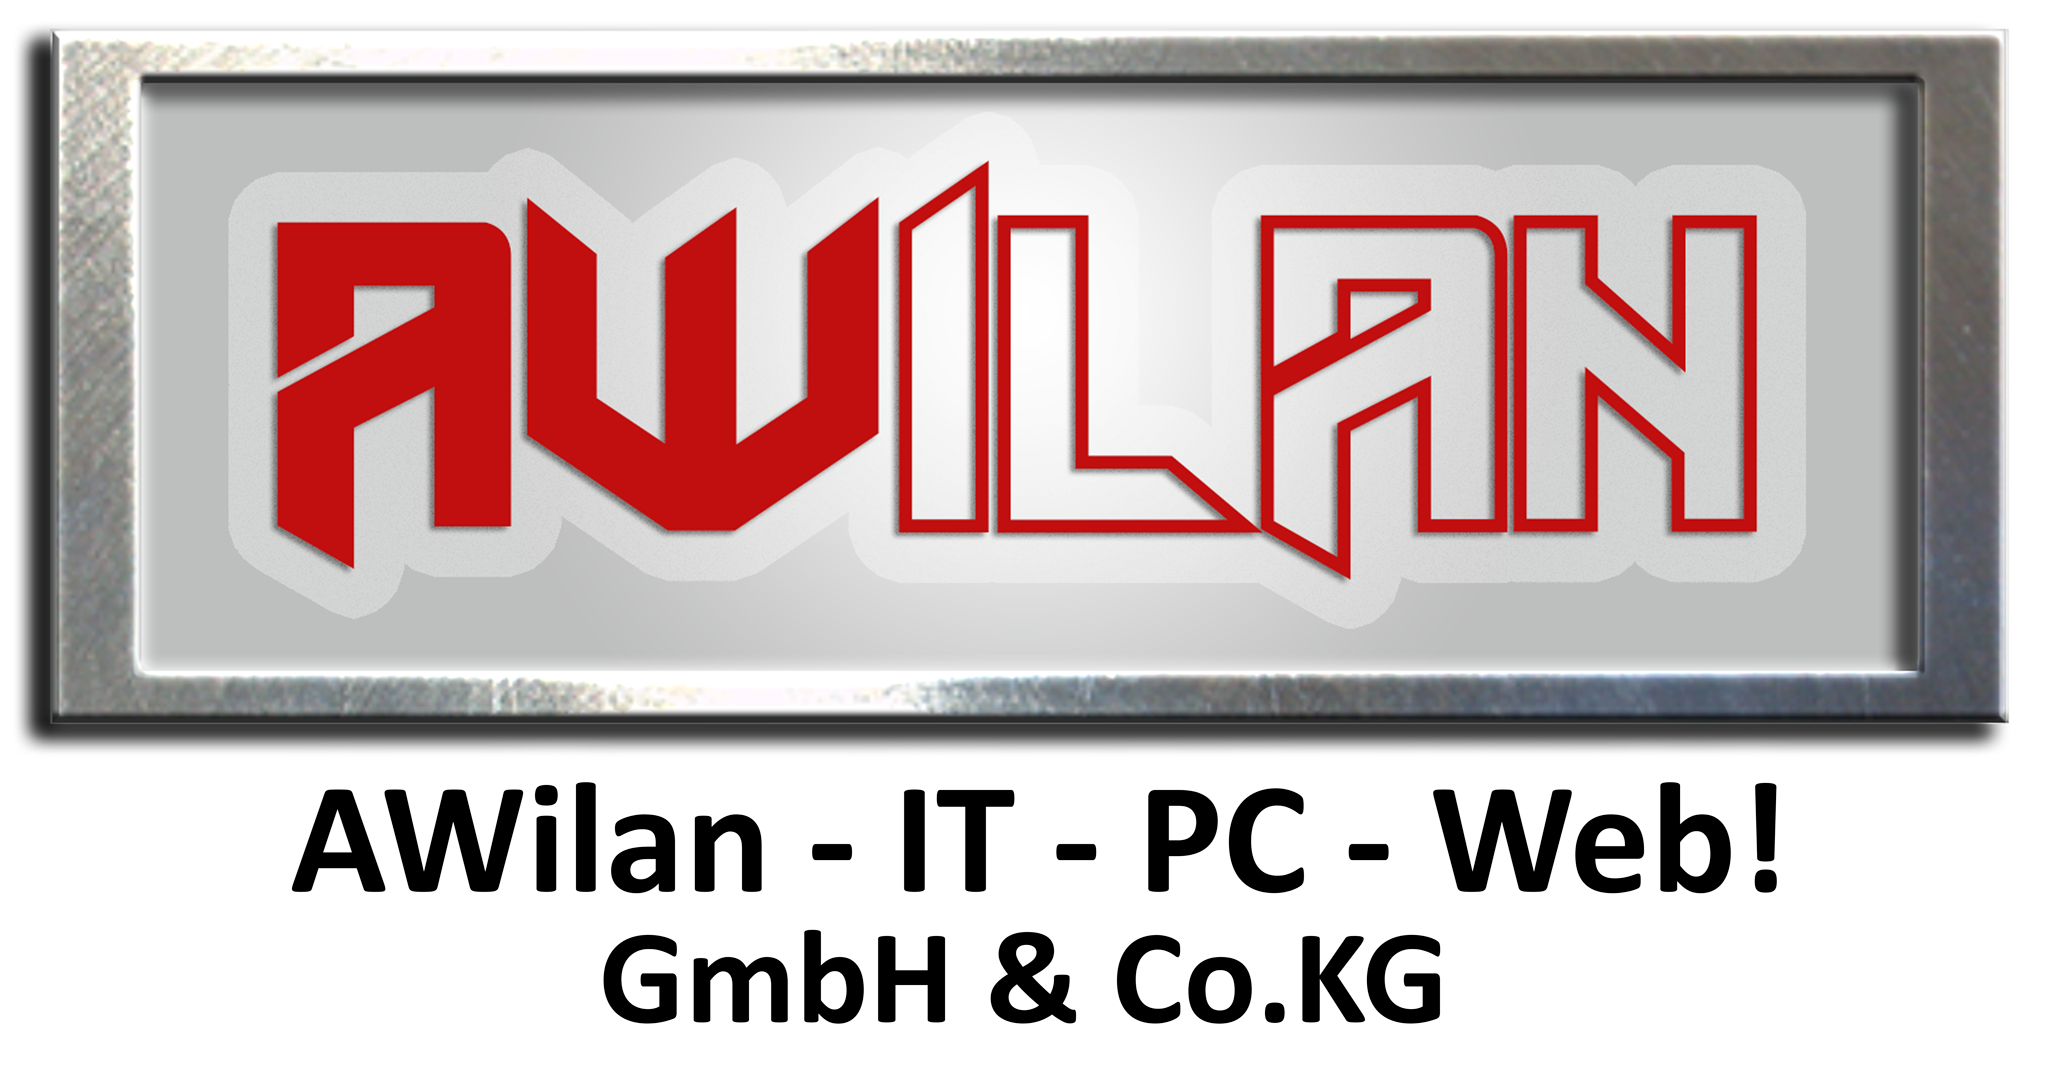 AWilan IT - PC - Web!